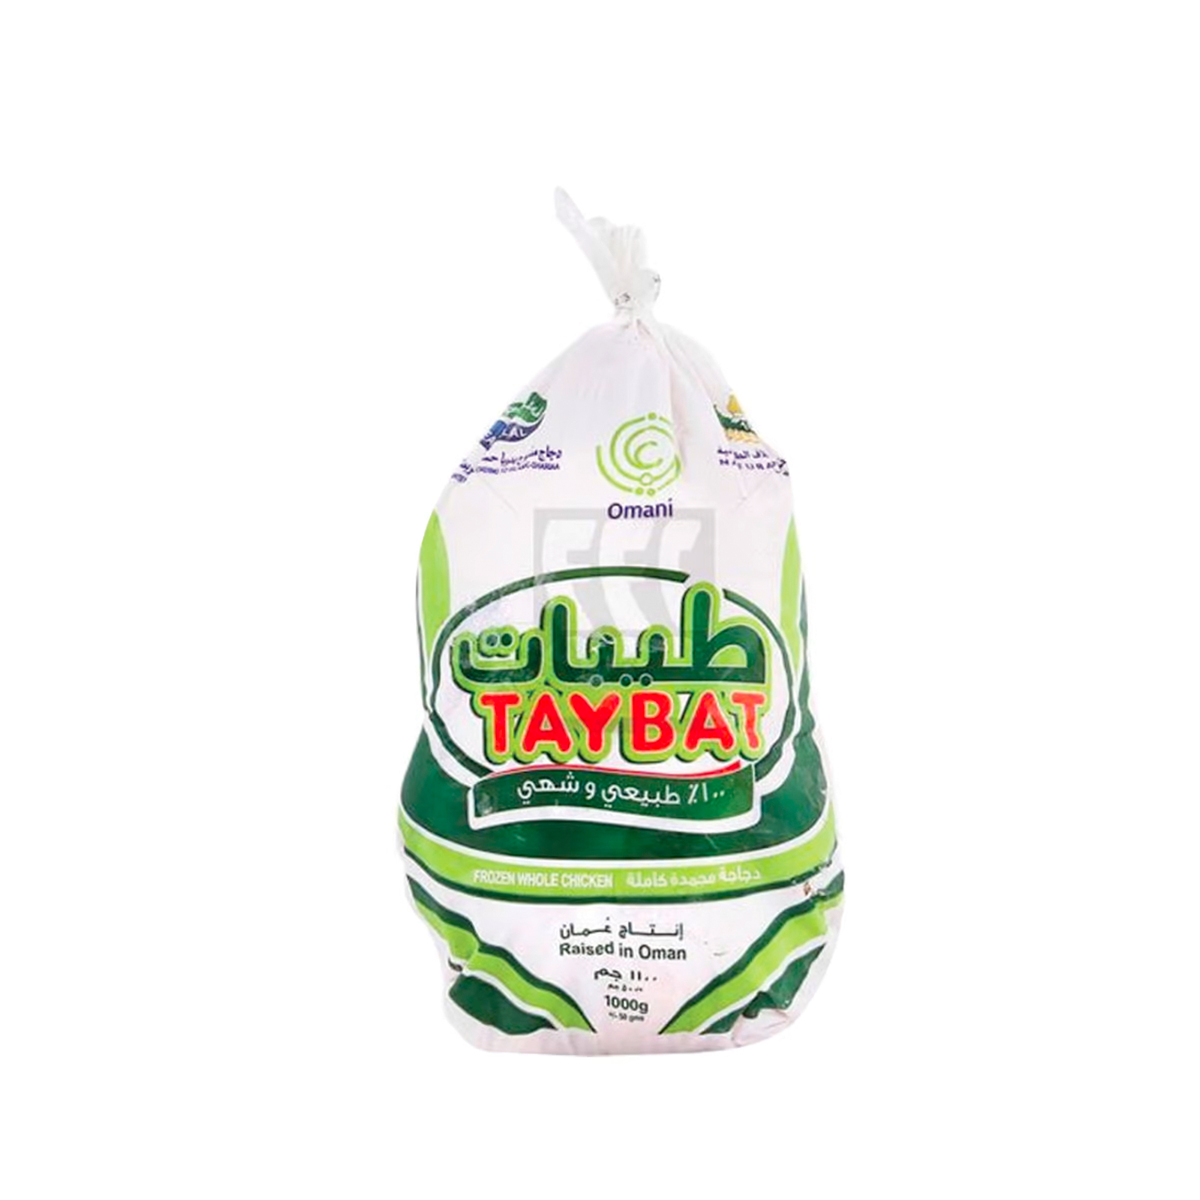 Taybat Whole Chicken 2 x 1kg